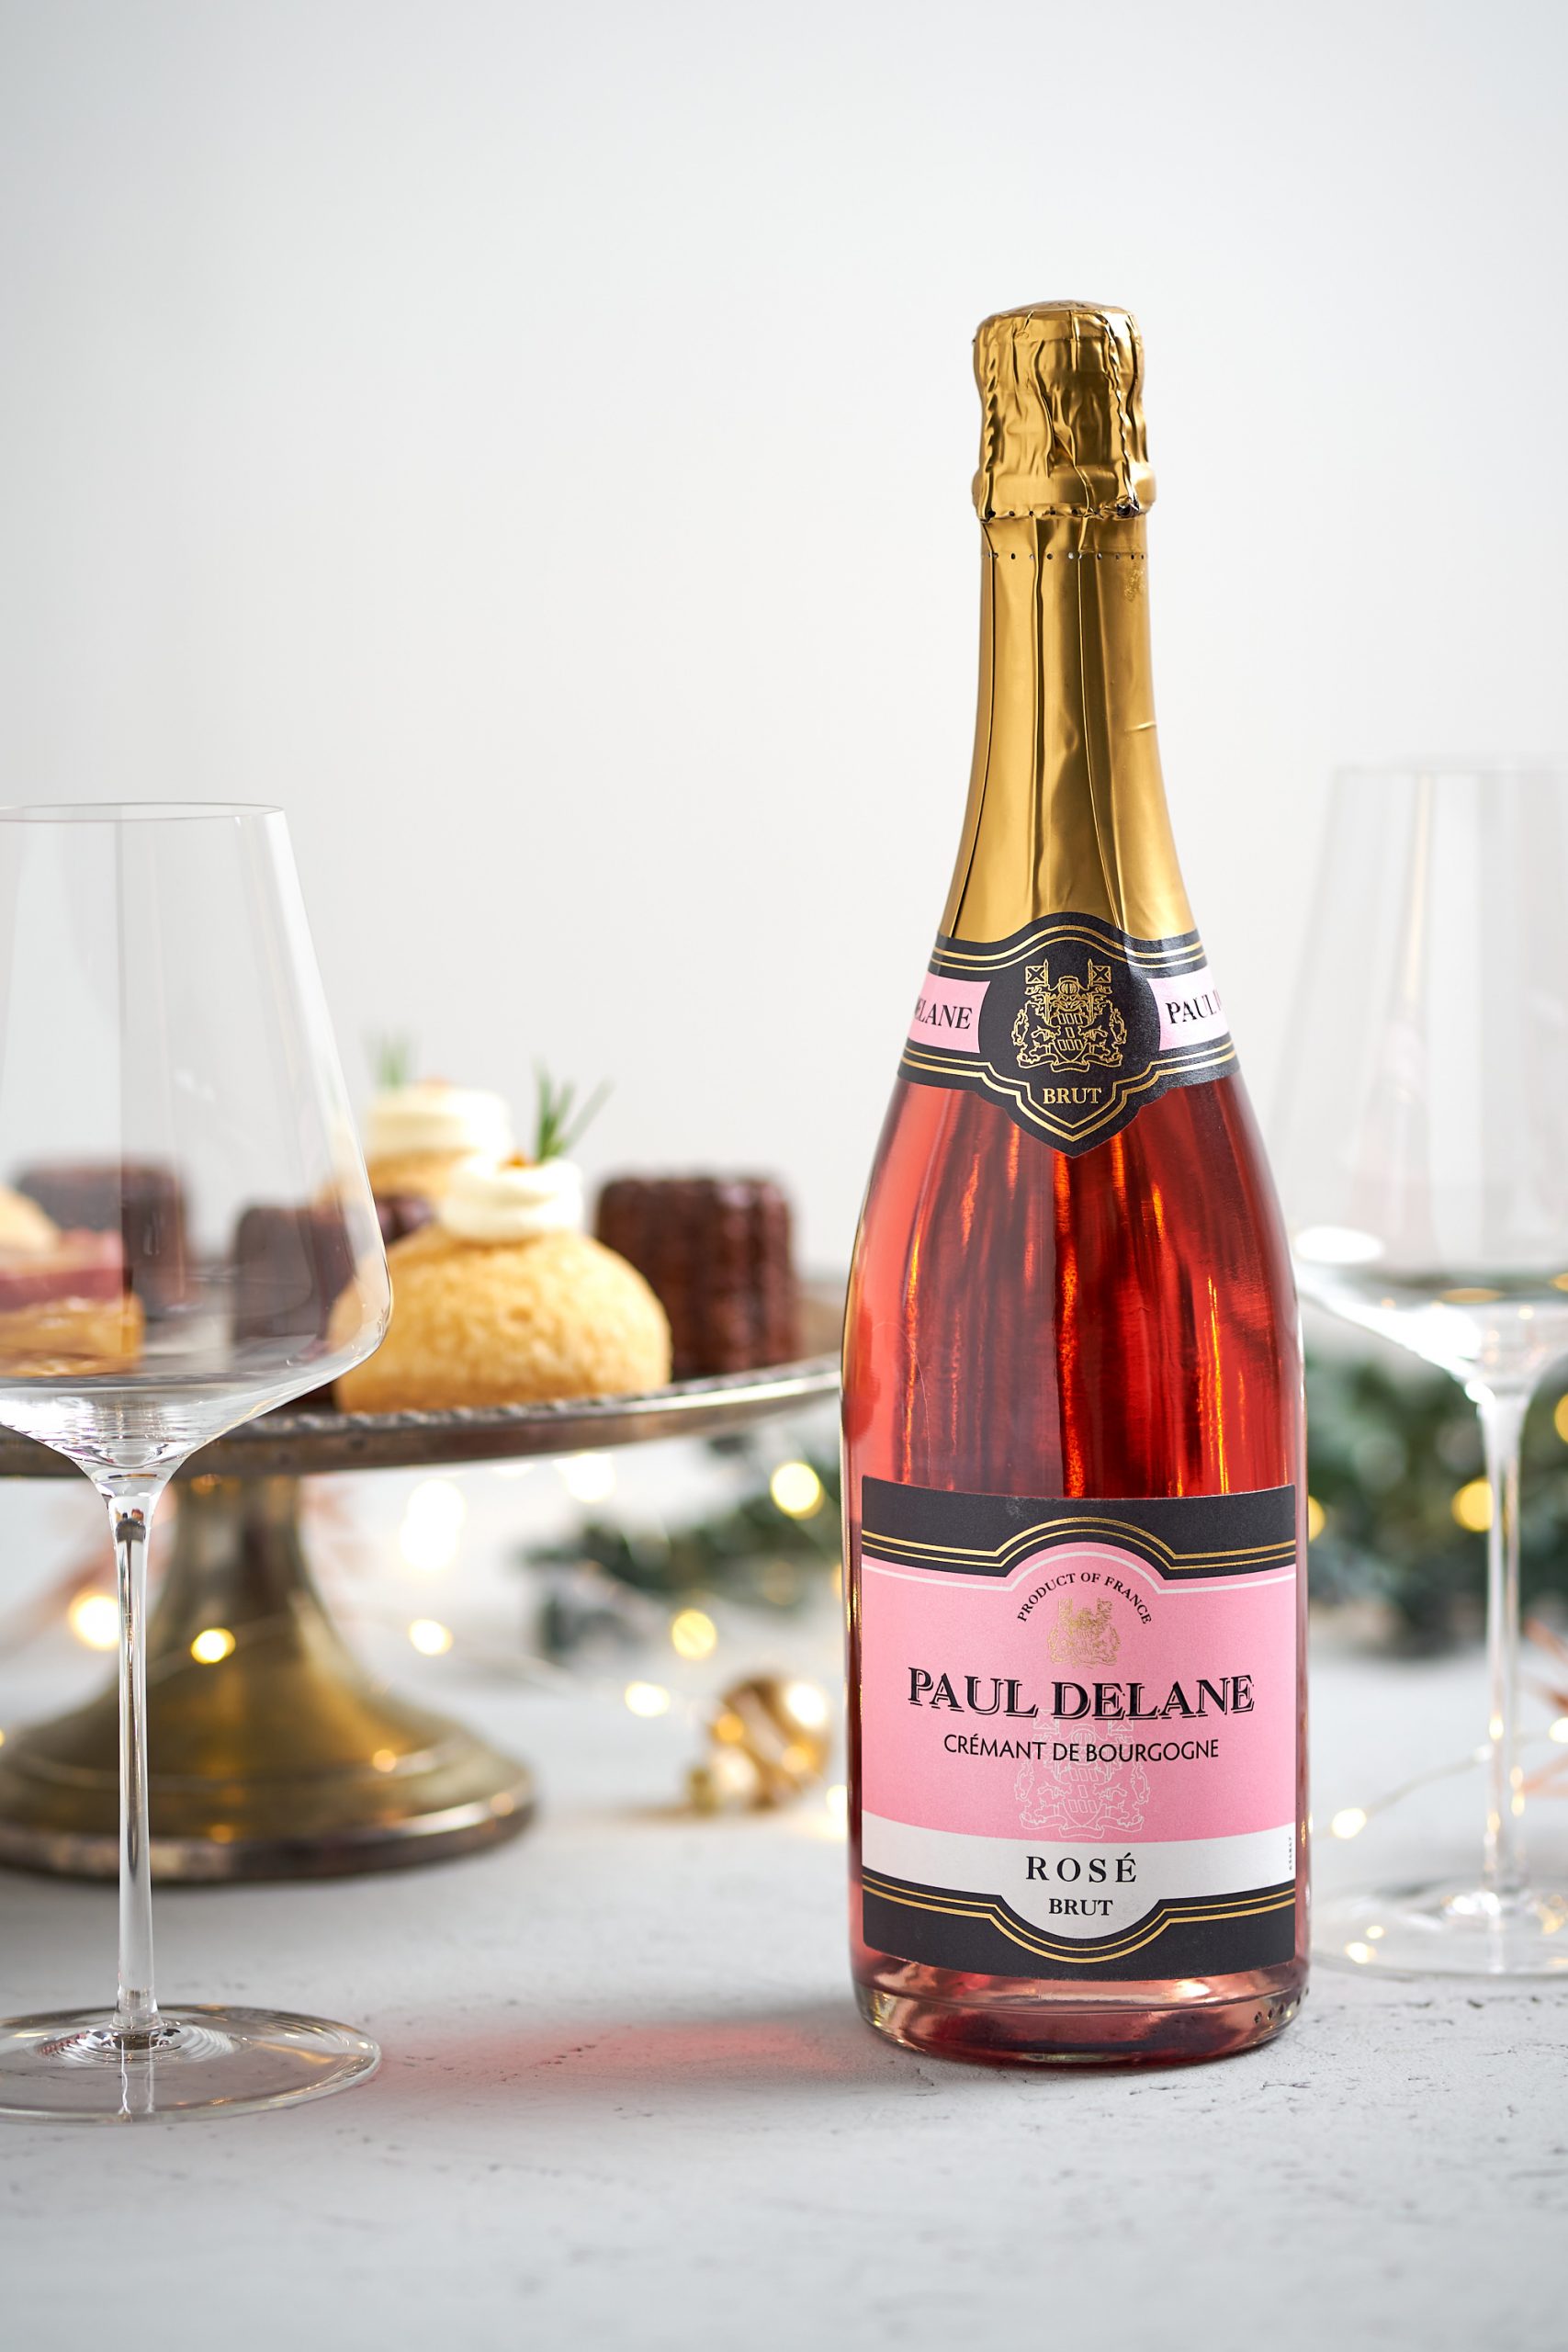 Paul Delane "Rosé" Cremant de Bourgogne brut